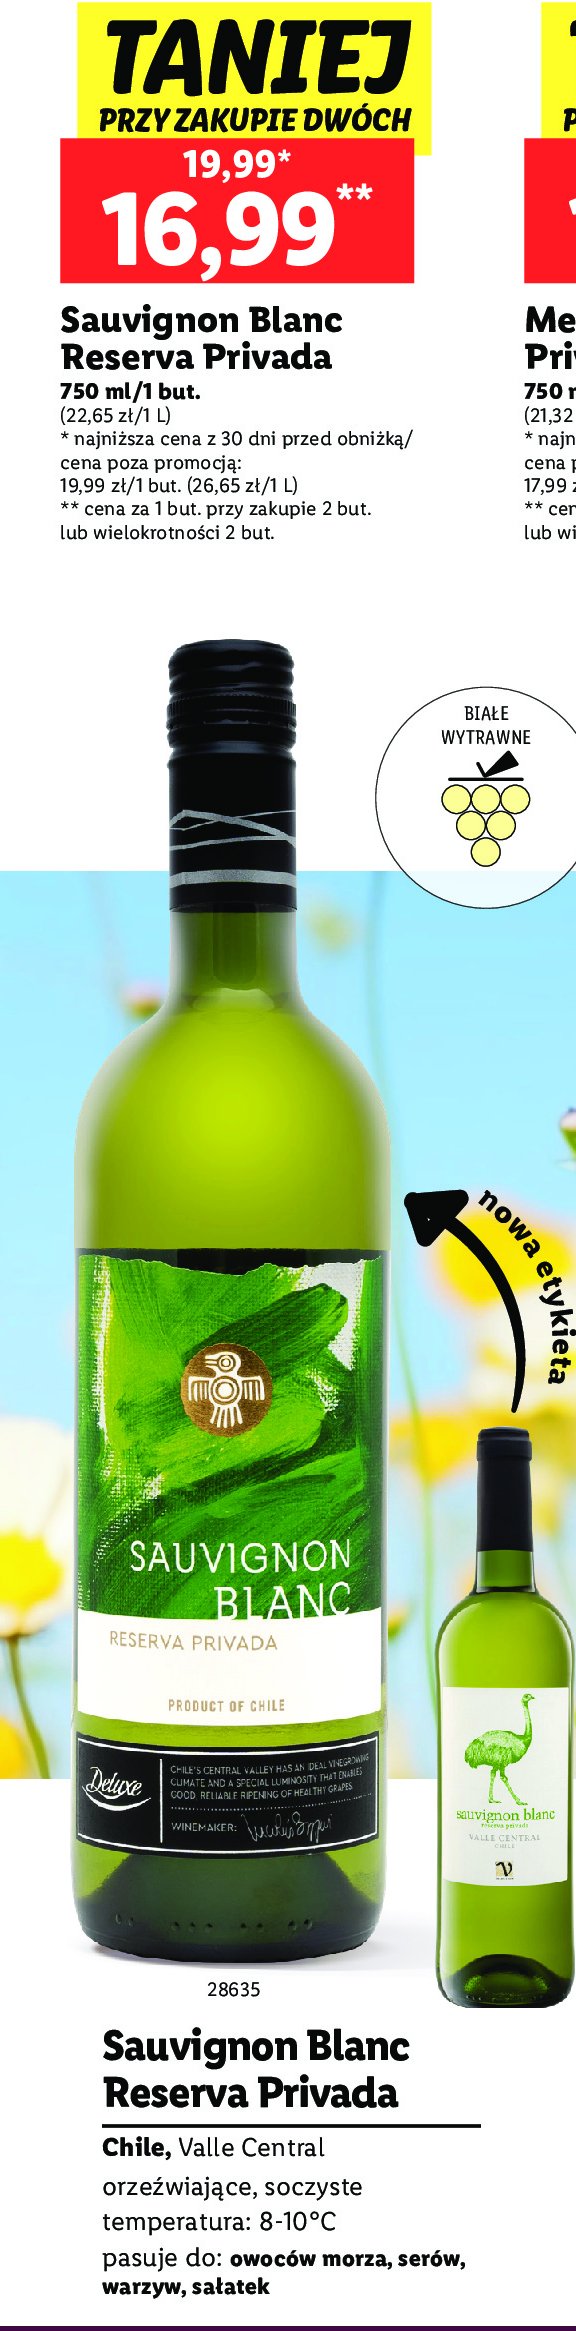 Wino Deluxe sauvignon blanc reserva privada promocja w Lidl